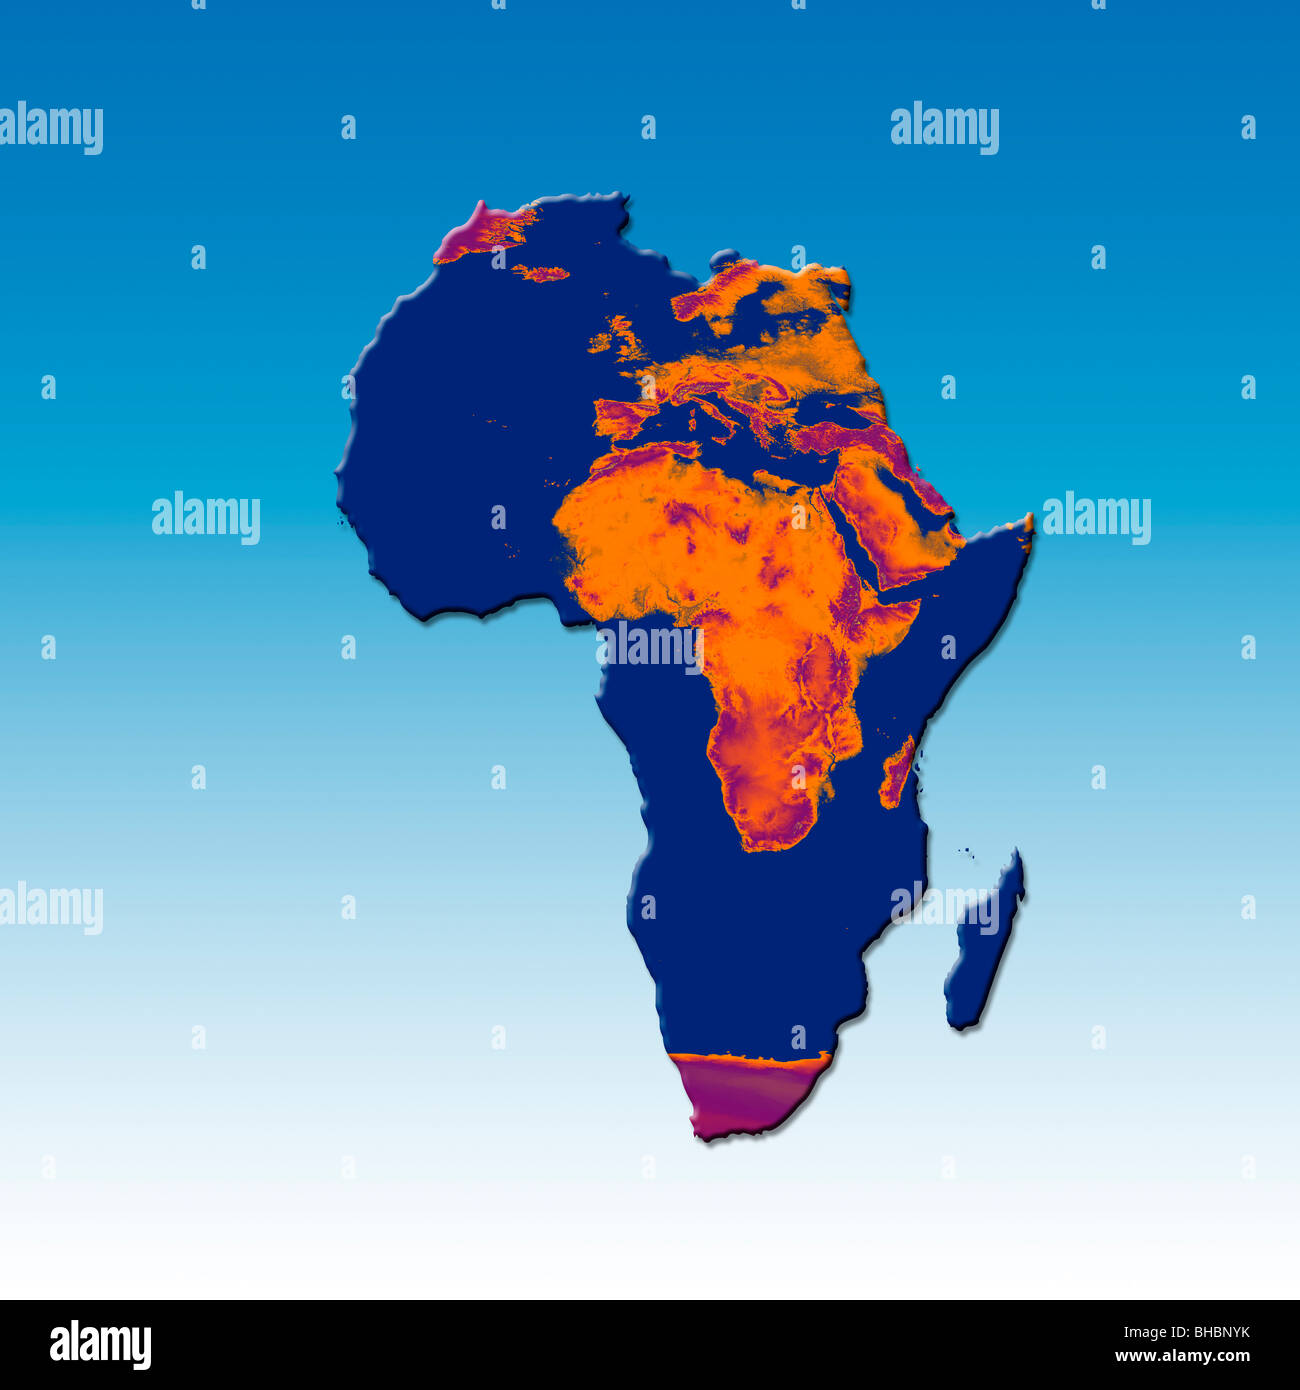 Karte von Afrika mit einem verbrannten Bild von Afrika und Europa überlagert. Konzeptbild vertreten, globale Erwärmung und Wüstenbildung Stockfoto